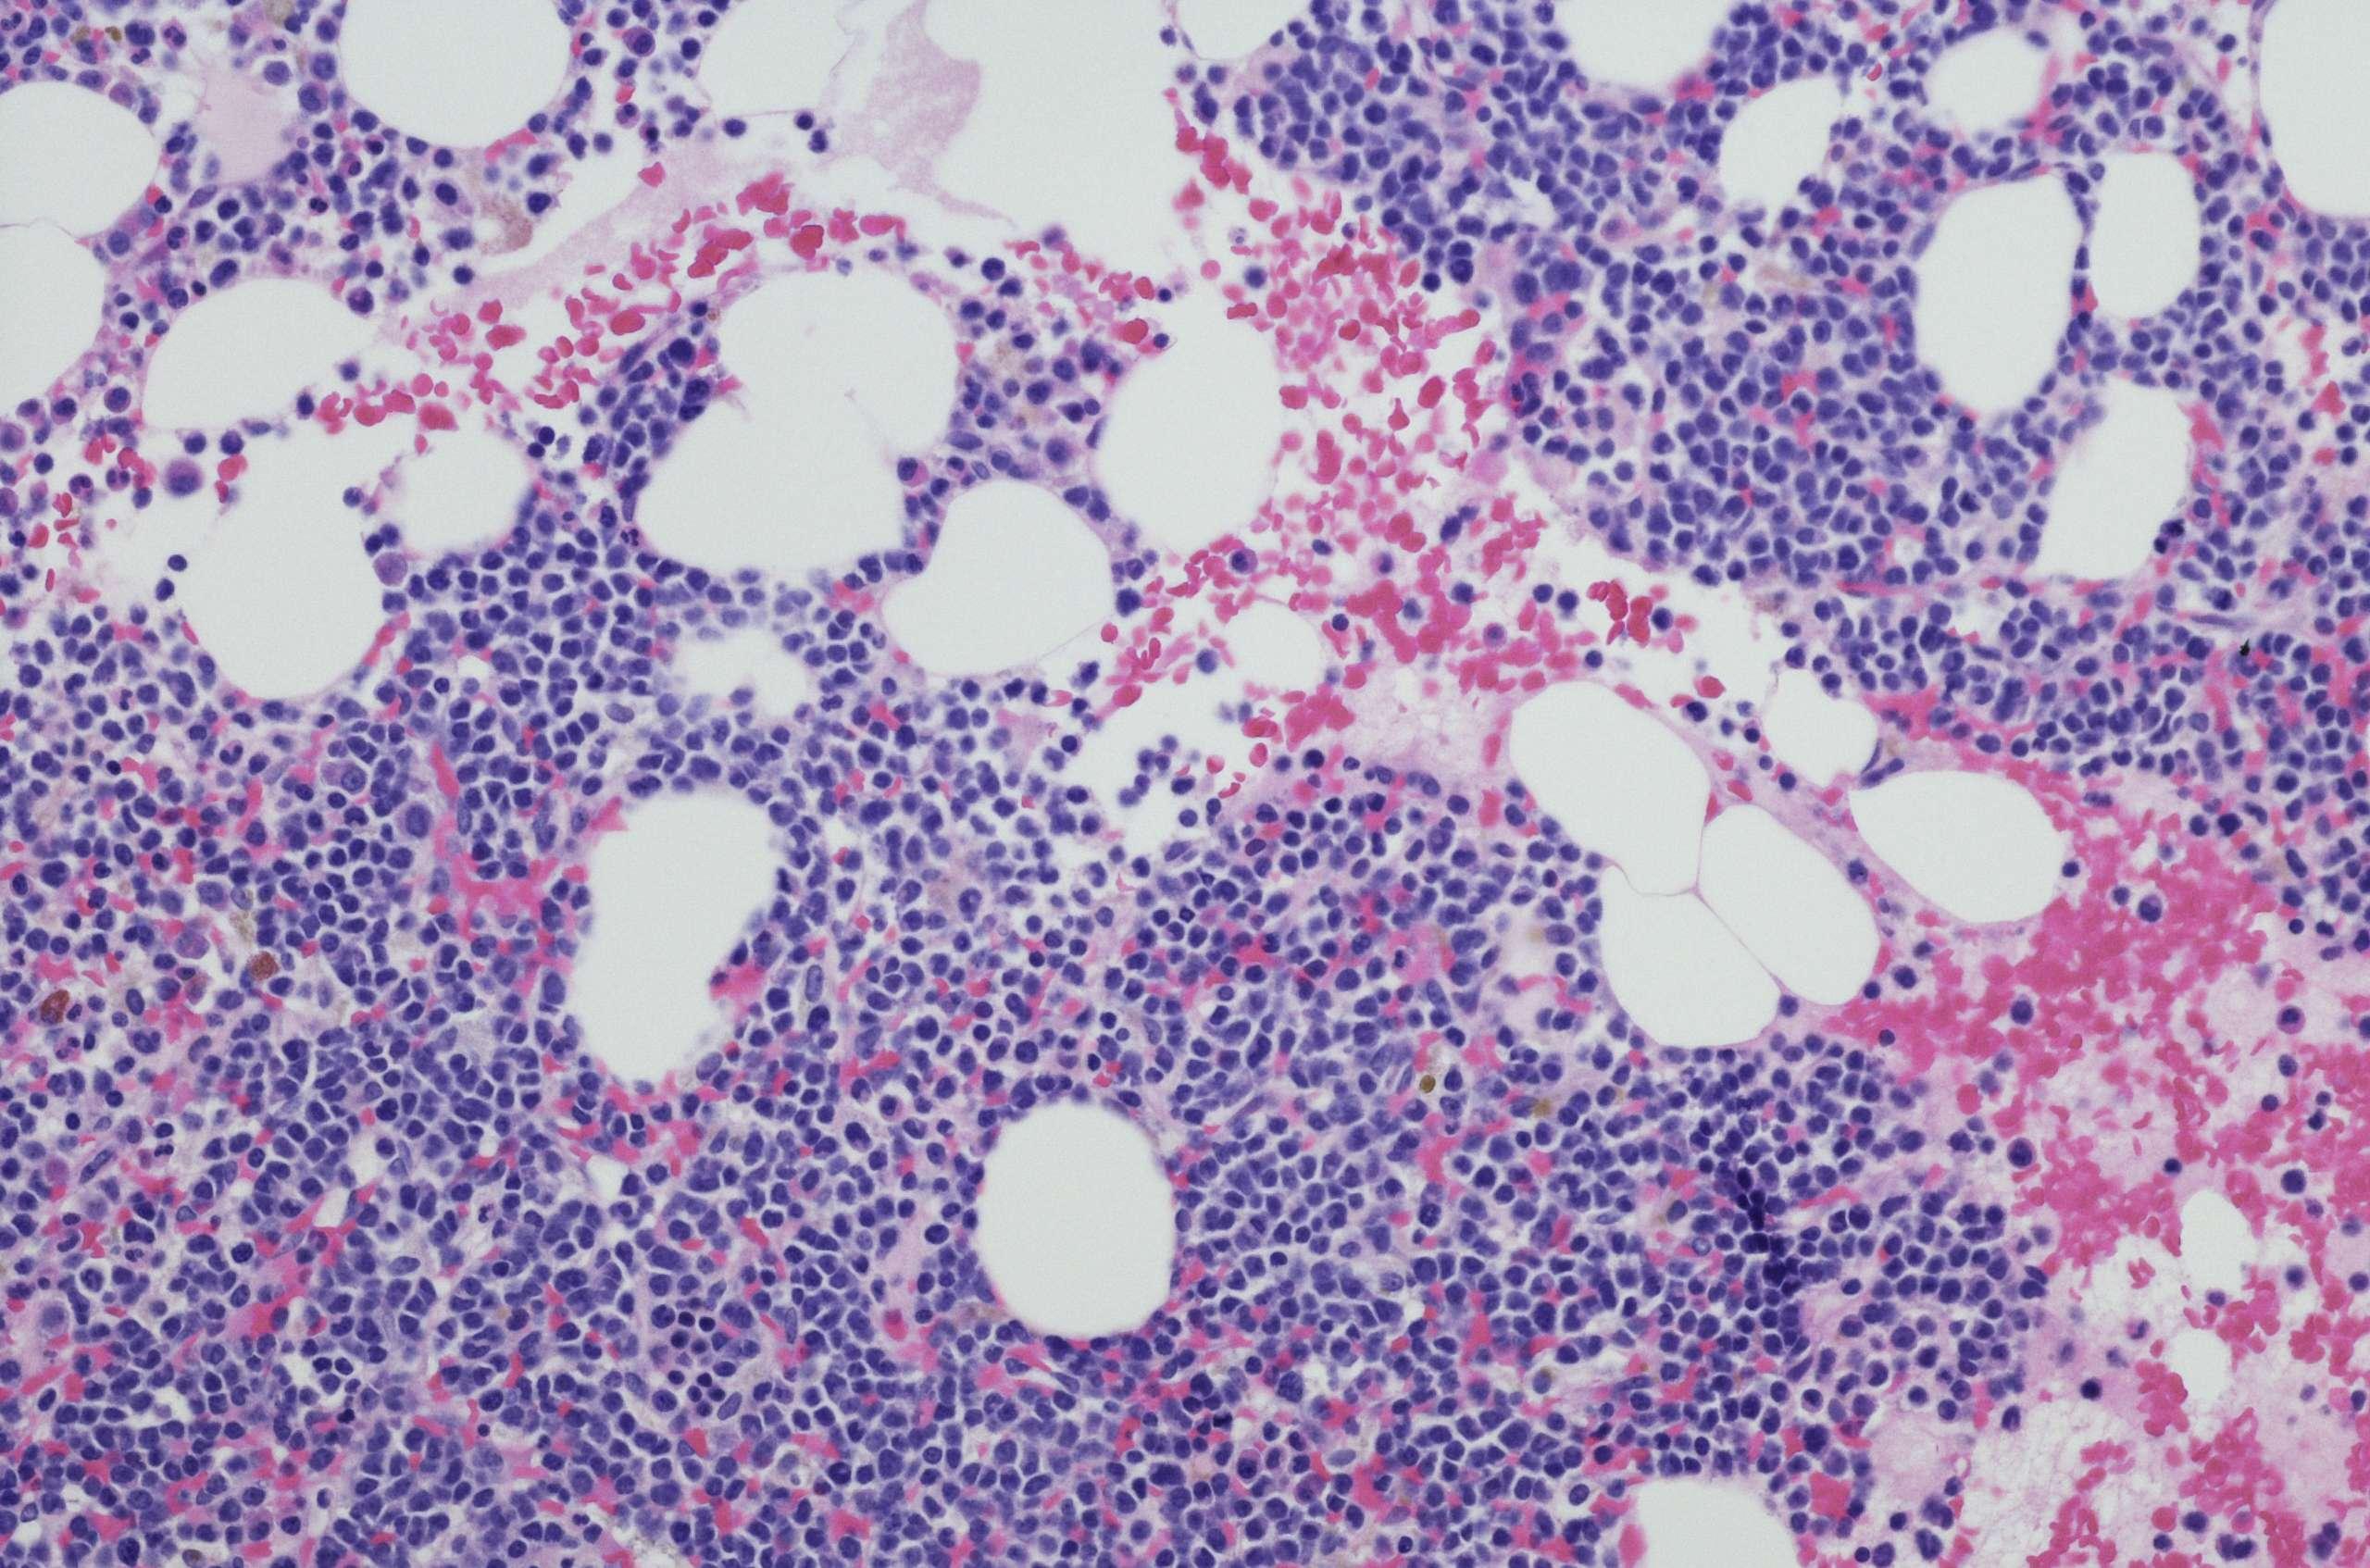 Mikroskopische Aufnahme einer Myelom-Neoplasma-Knochenmarkbiopsie. Hämatoxylin- und Eosin-Färbung